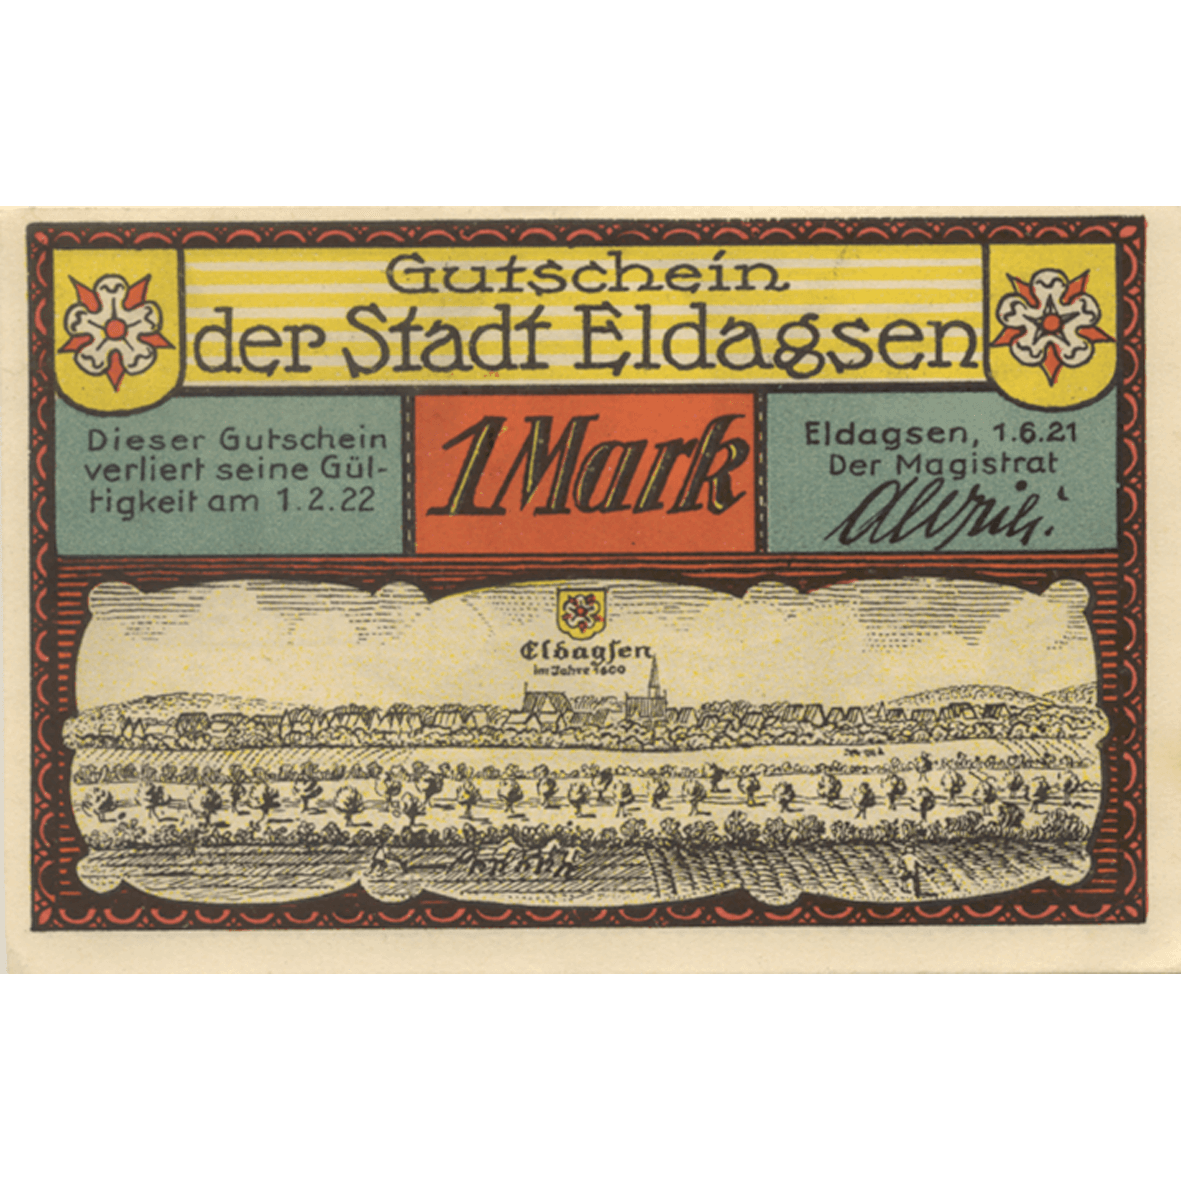 Deutsches Reich, Weimarer Republik, Stadt Eldagsen, Notgeldschein zu 25 Pfennig 1921 (obverse)